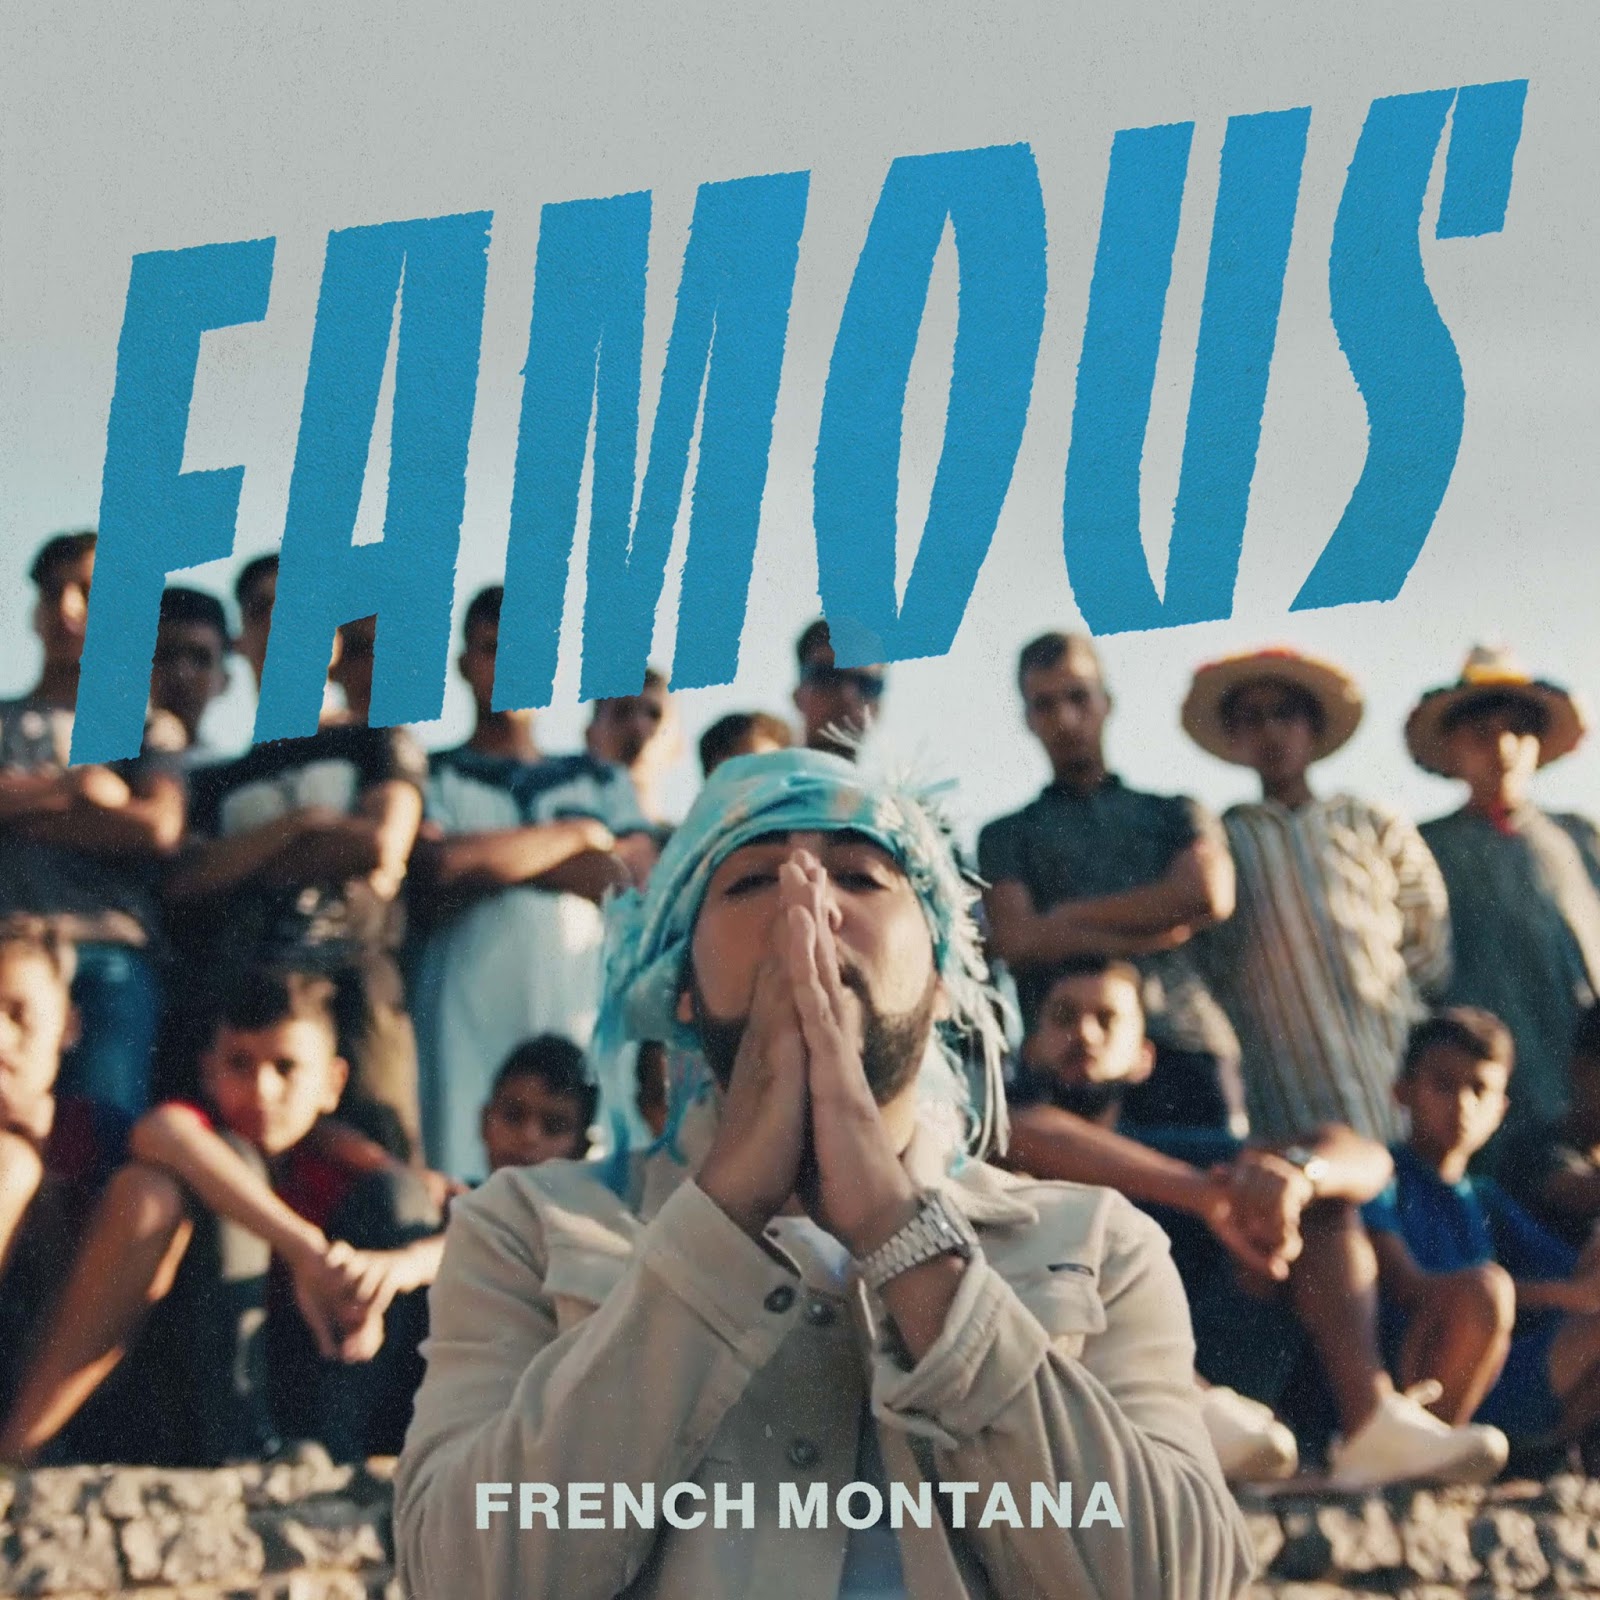 French montana ft. French Montana Montana. French Montana famous. French Montana audiovision Remix. French Montana - Montana album Cover.